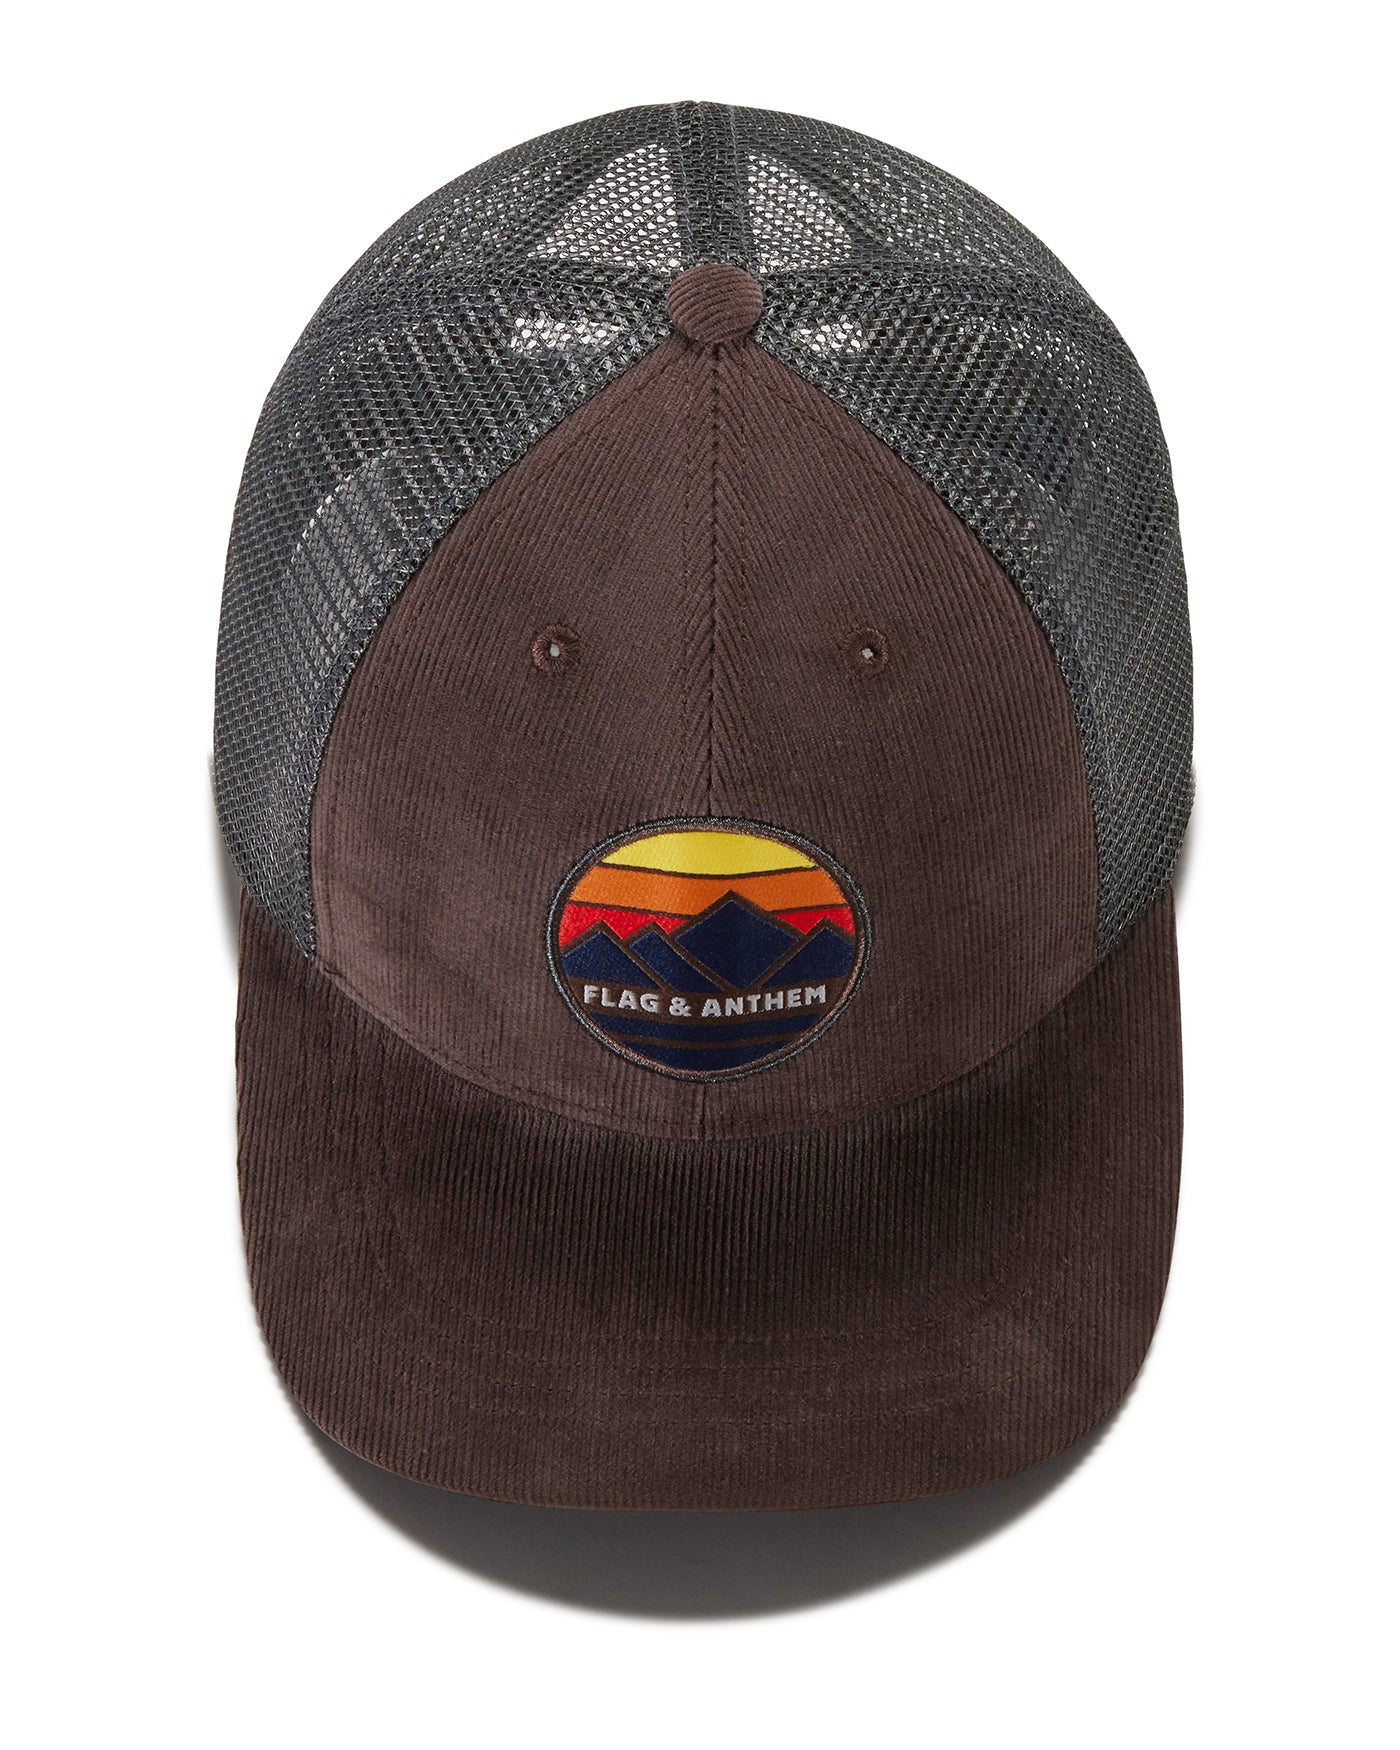 MOUNTAIN SUNSET CORDUROY TRUCKER HAT